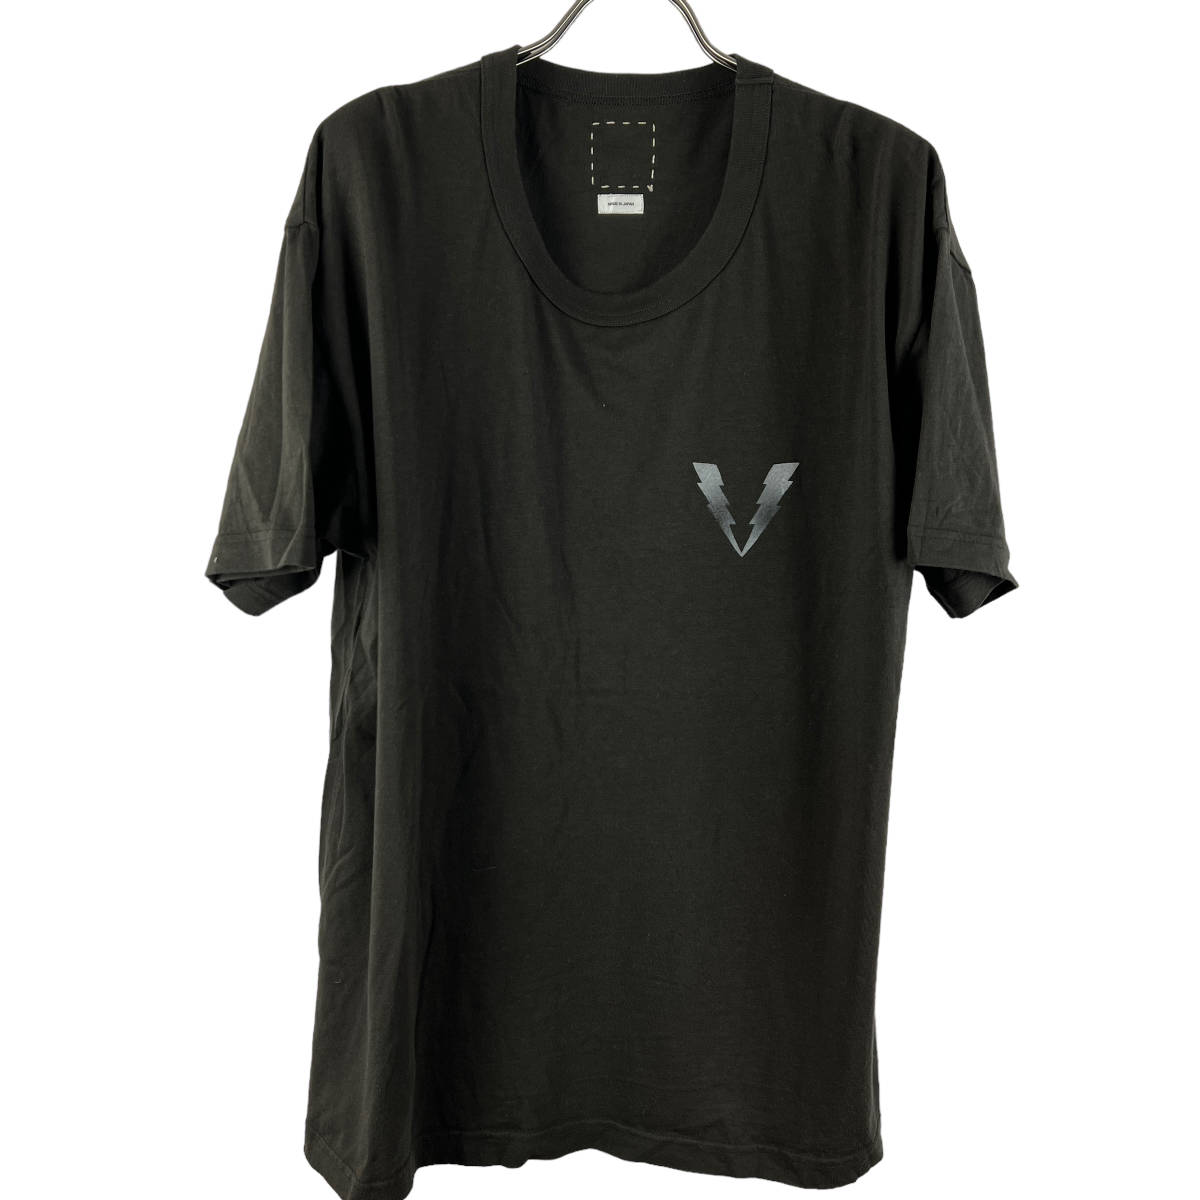 VISVIM(ビズビム) VLOGO Shortsleeve Cotton T Shirt (olive)